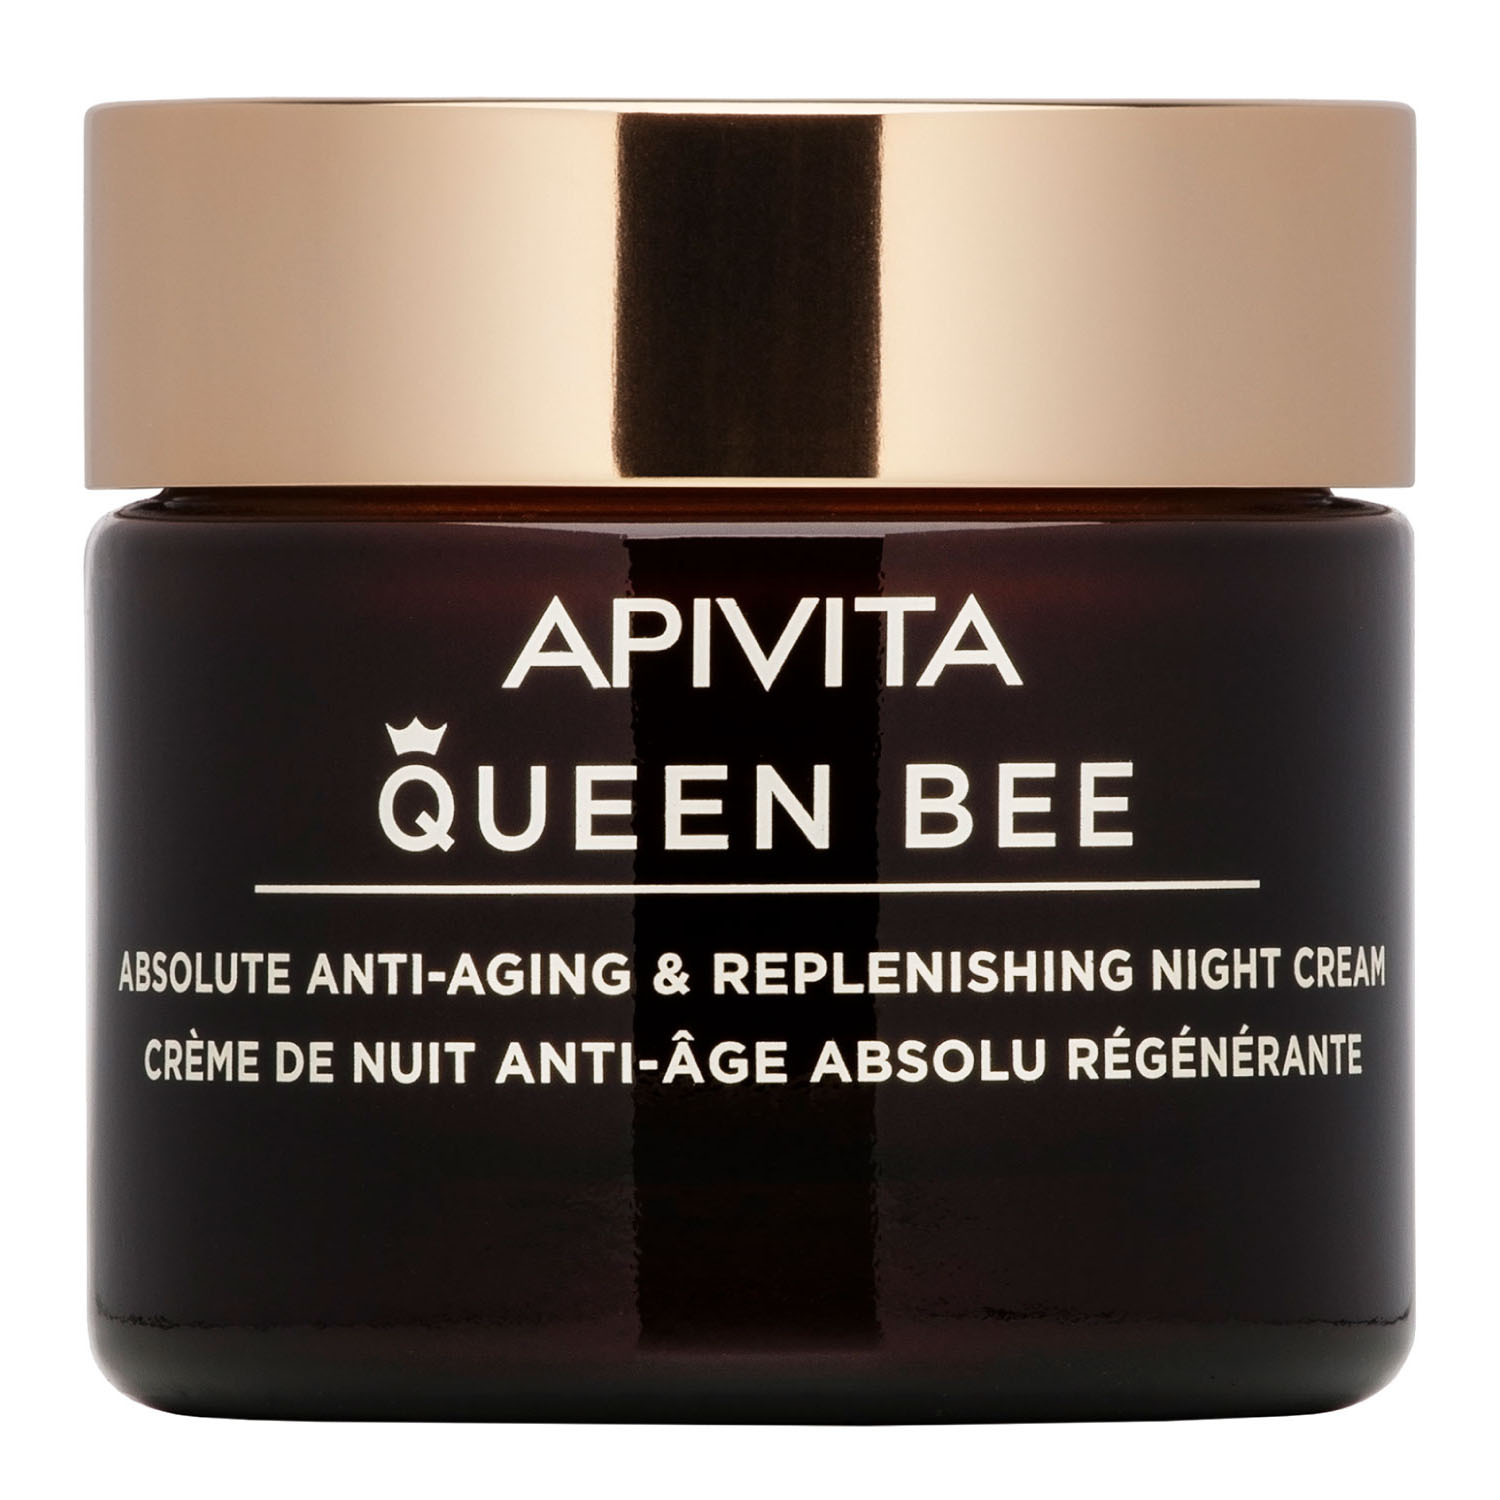 Apivita Комплексный восстанавливающий ночной крем, 50 мл (Apivita, Queen Bee)